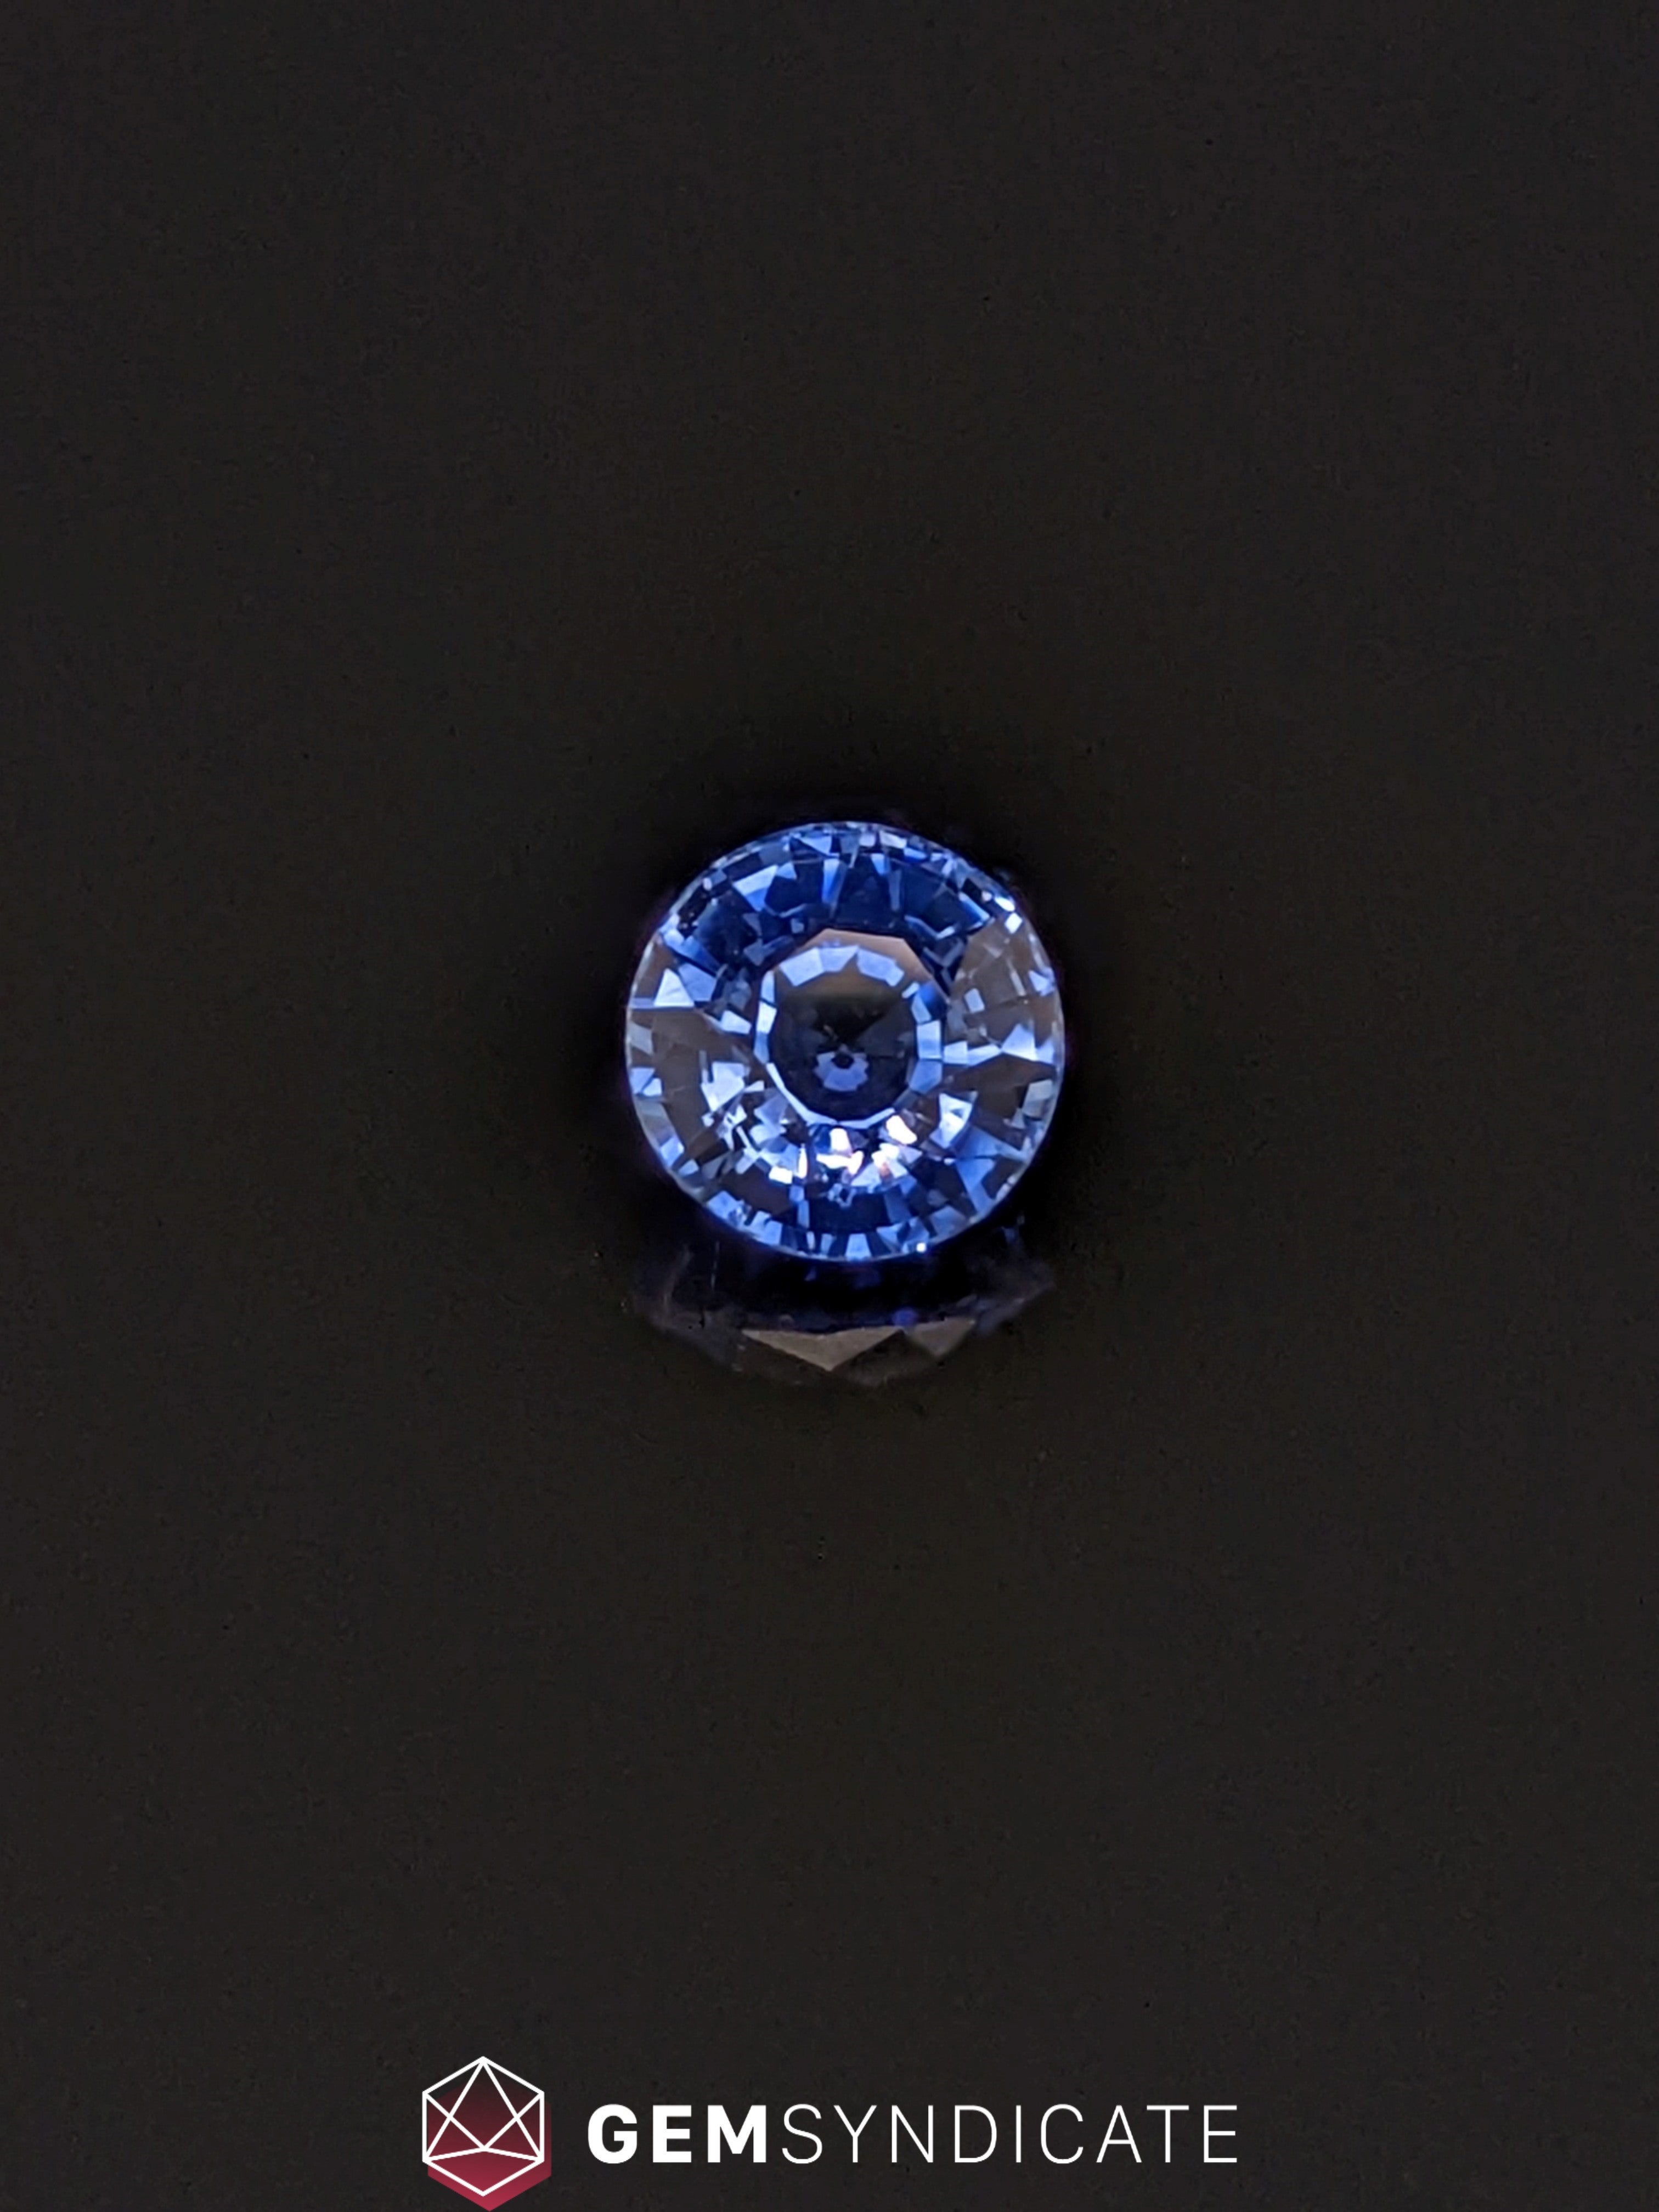 Dazzling Round Blue Sapphire 1.66ct